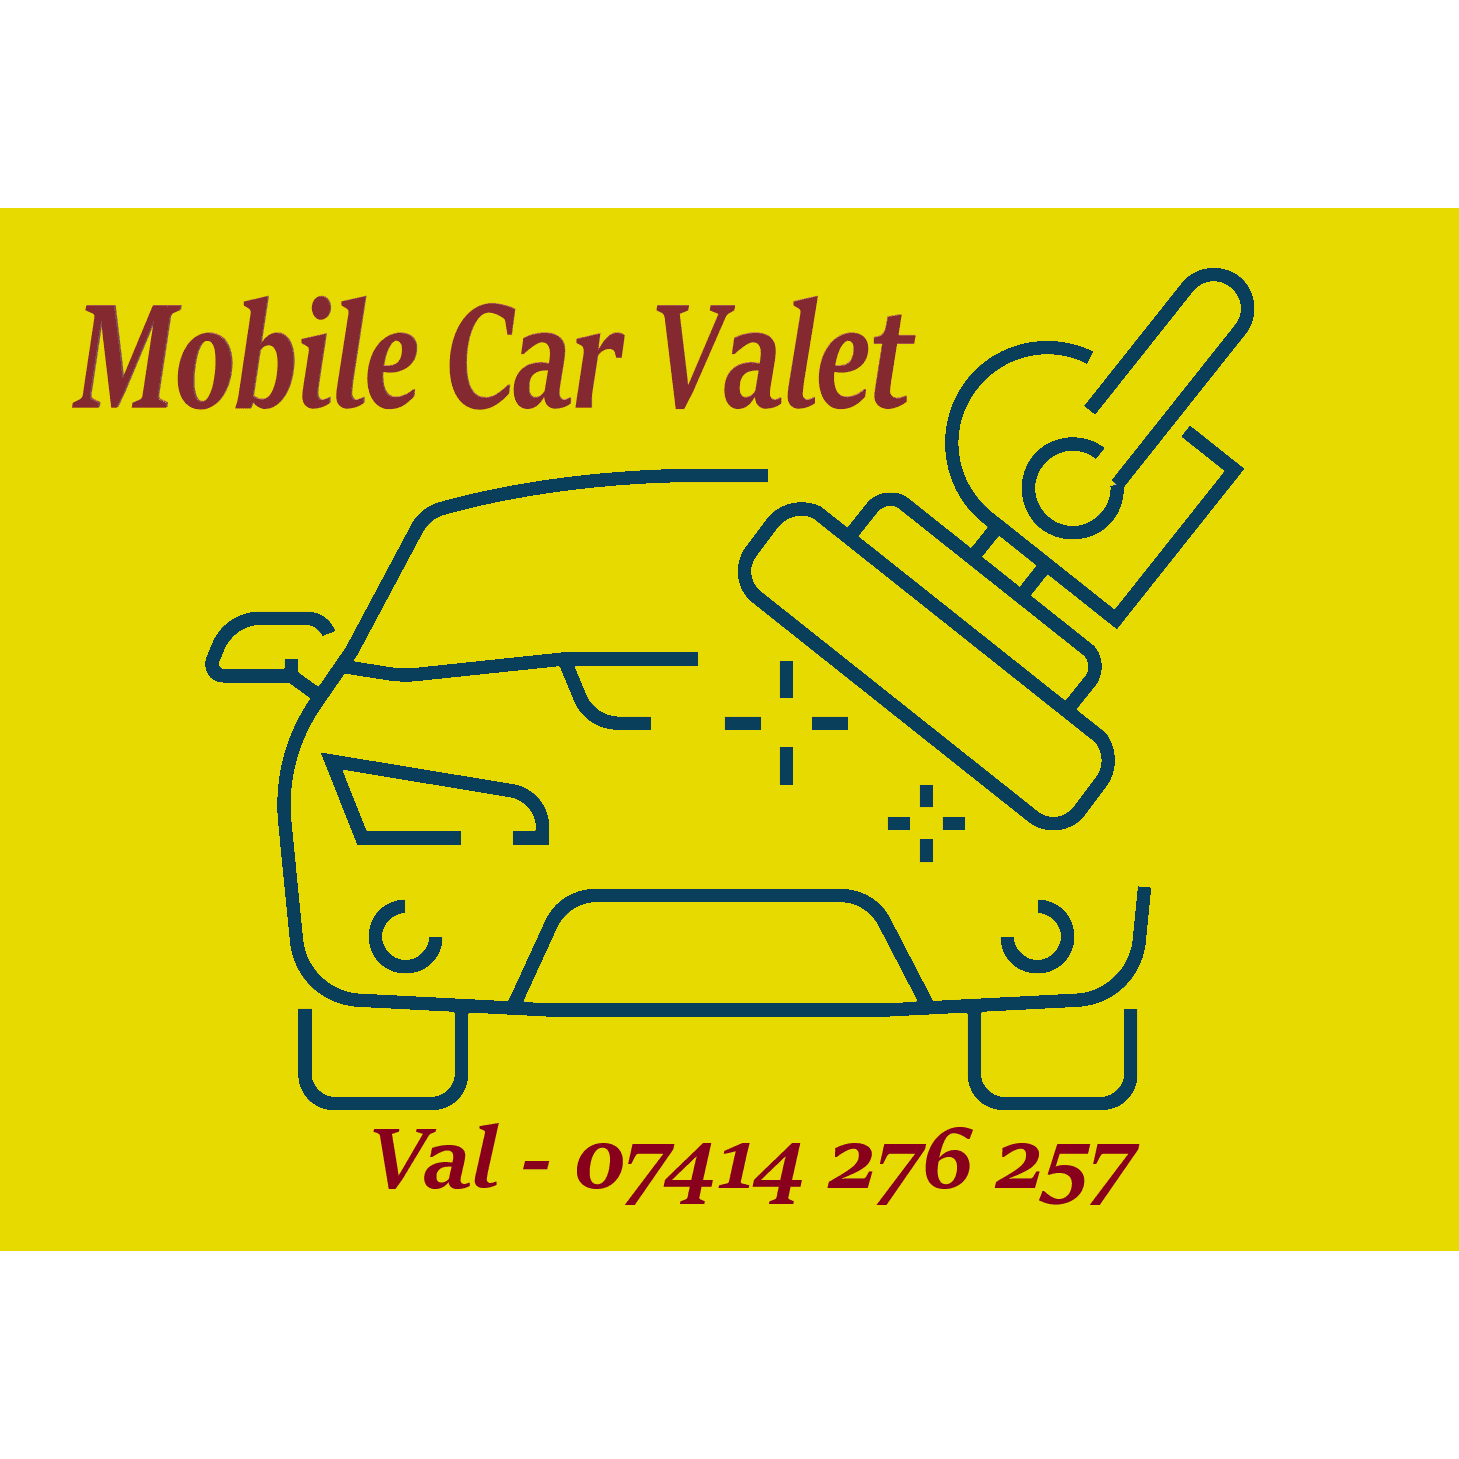 LOGO Val - Mobile Car Valet Liversedge 07414 276257